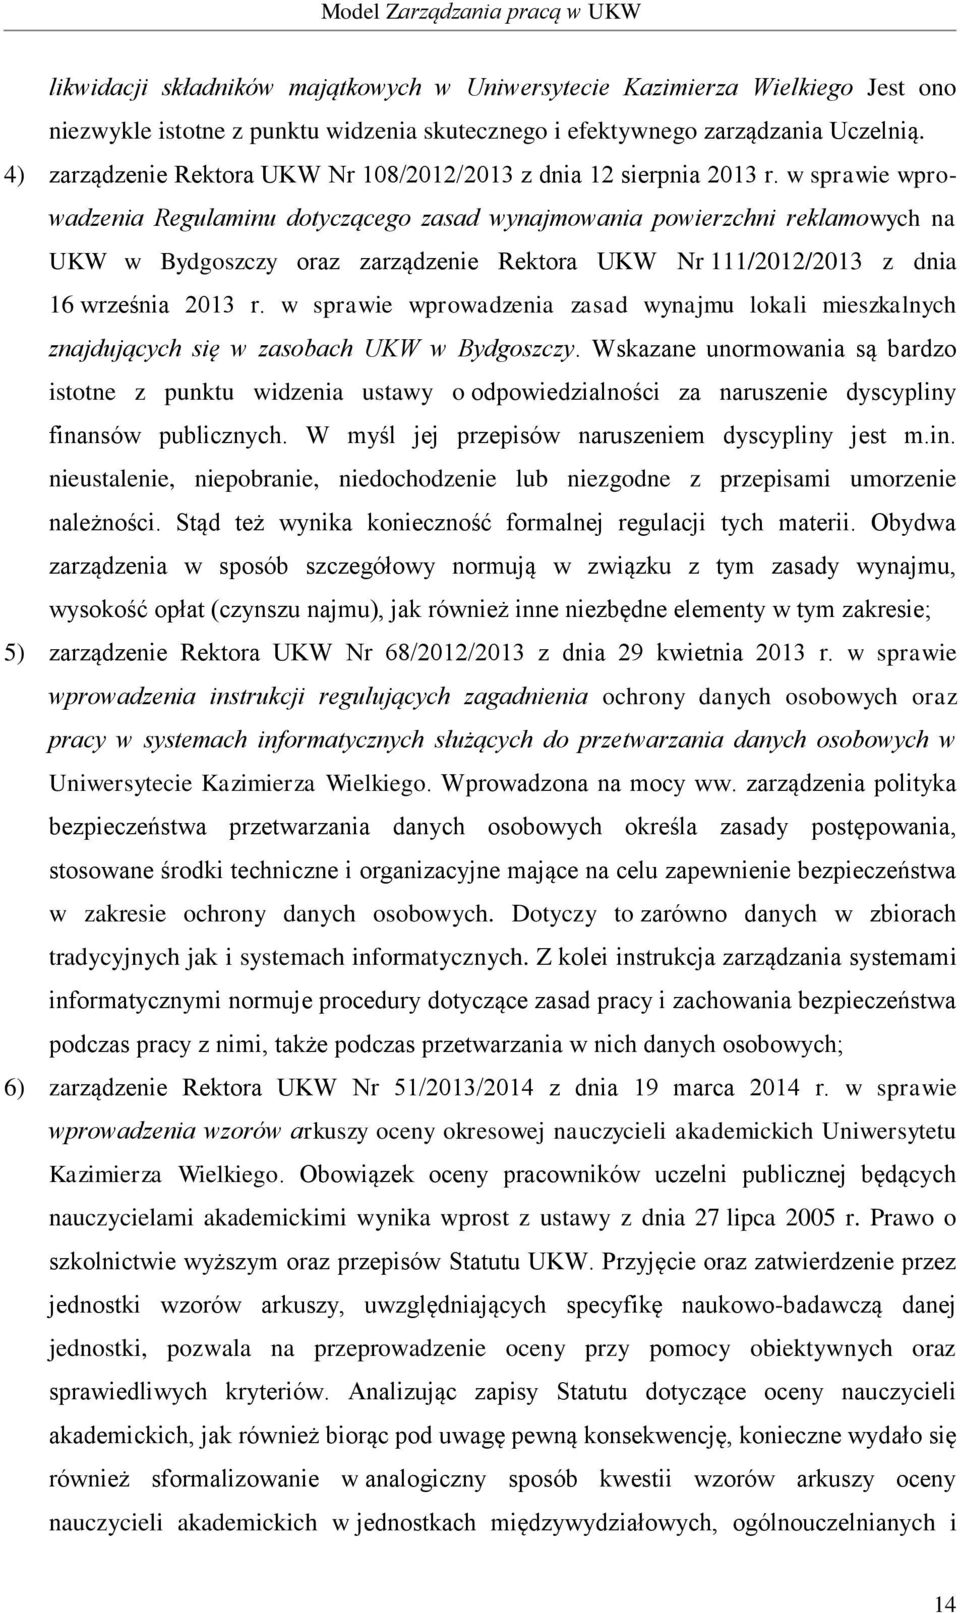 w sprawie wprowadzenia Regulaminu dotyczącego zasad wynajmowania powierzchni reklamowych na UKW w Bydgoszczy oraz zarządzenie Rektora UKW Nr 111/2012/2013 z dnia 16 września 2013 r.